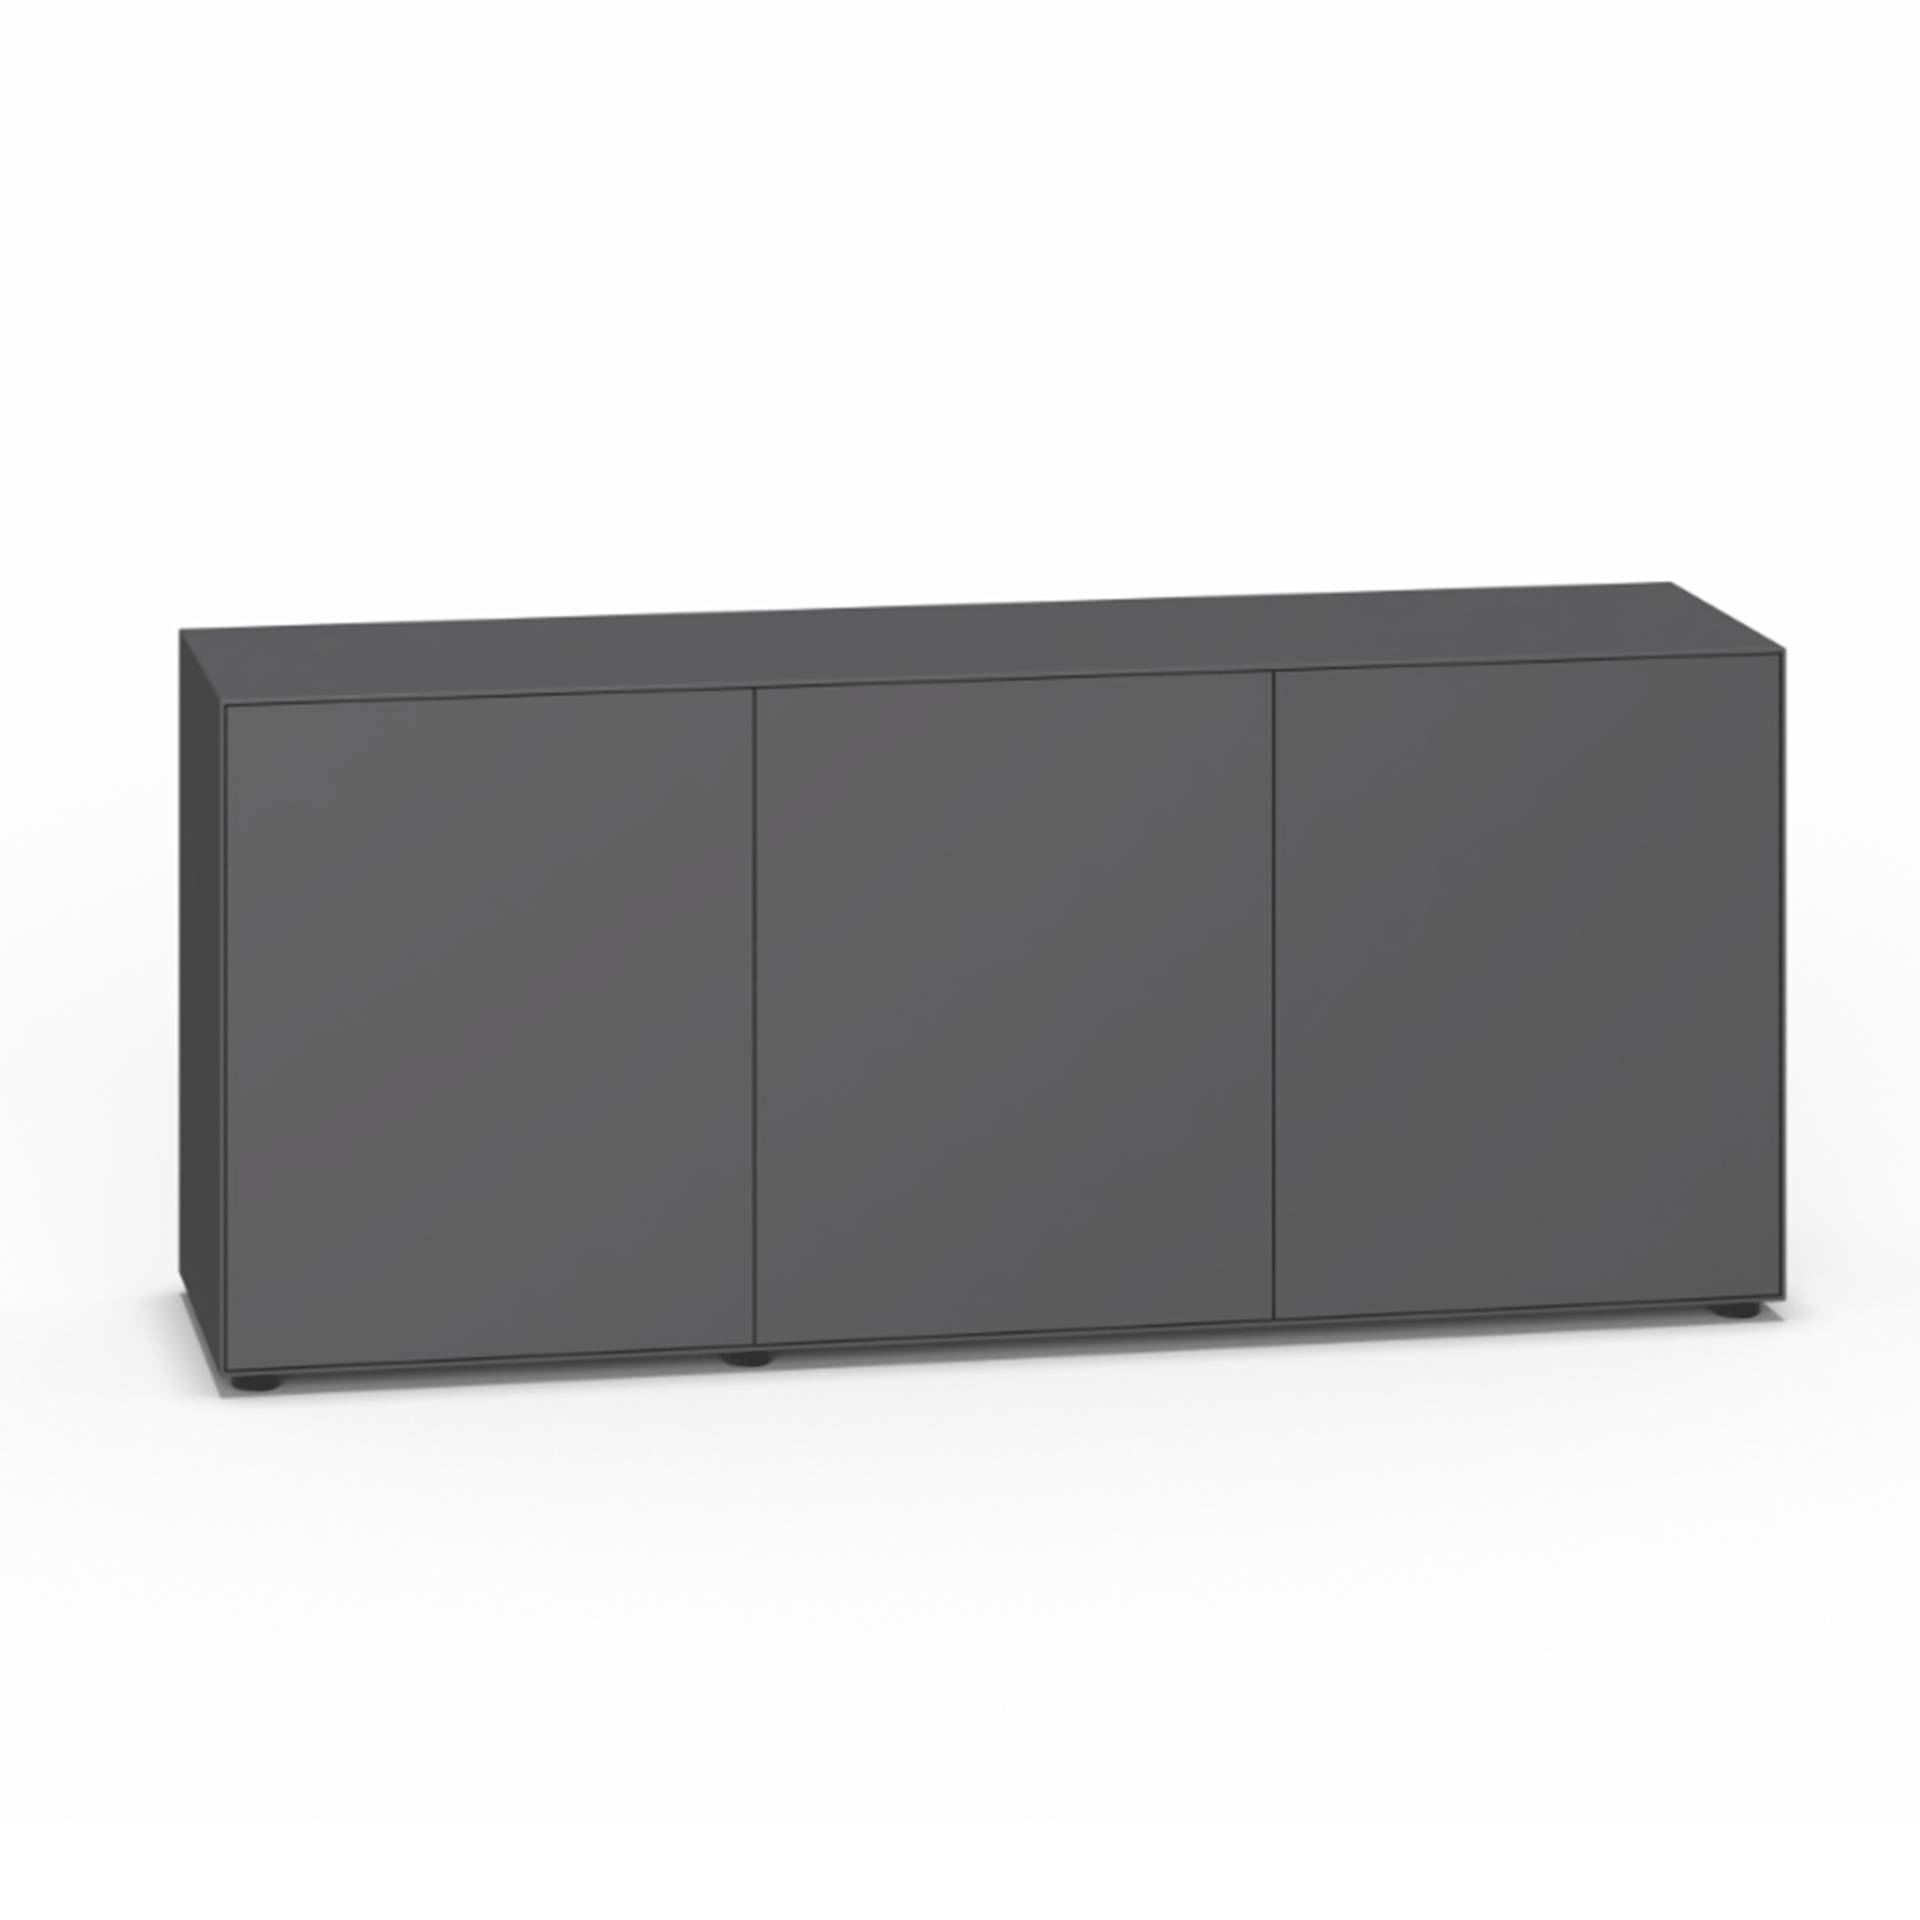 Piure - Nex Pur Box Türbox 180x77,5x48cm - graphit/MDF matt lackiert/mit Gleitfüße/2 Fachböden/inkl. Verstärkungsschiene von Piure